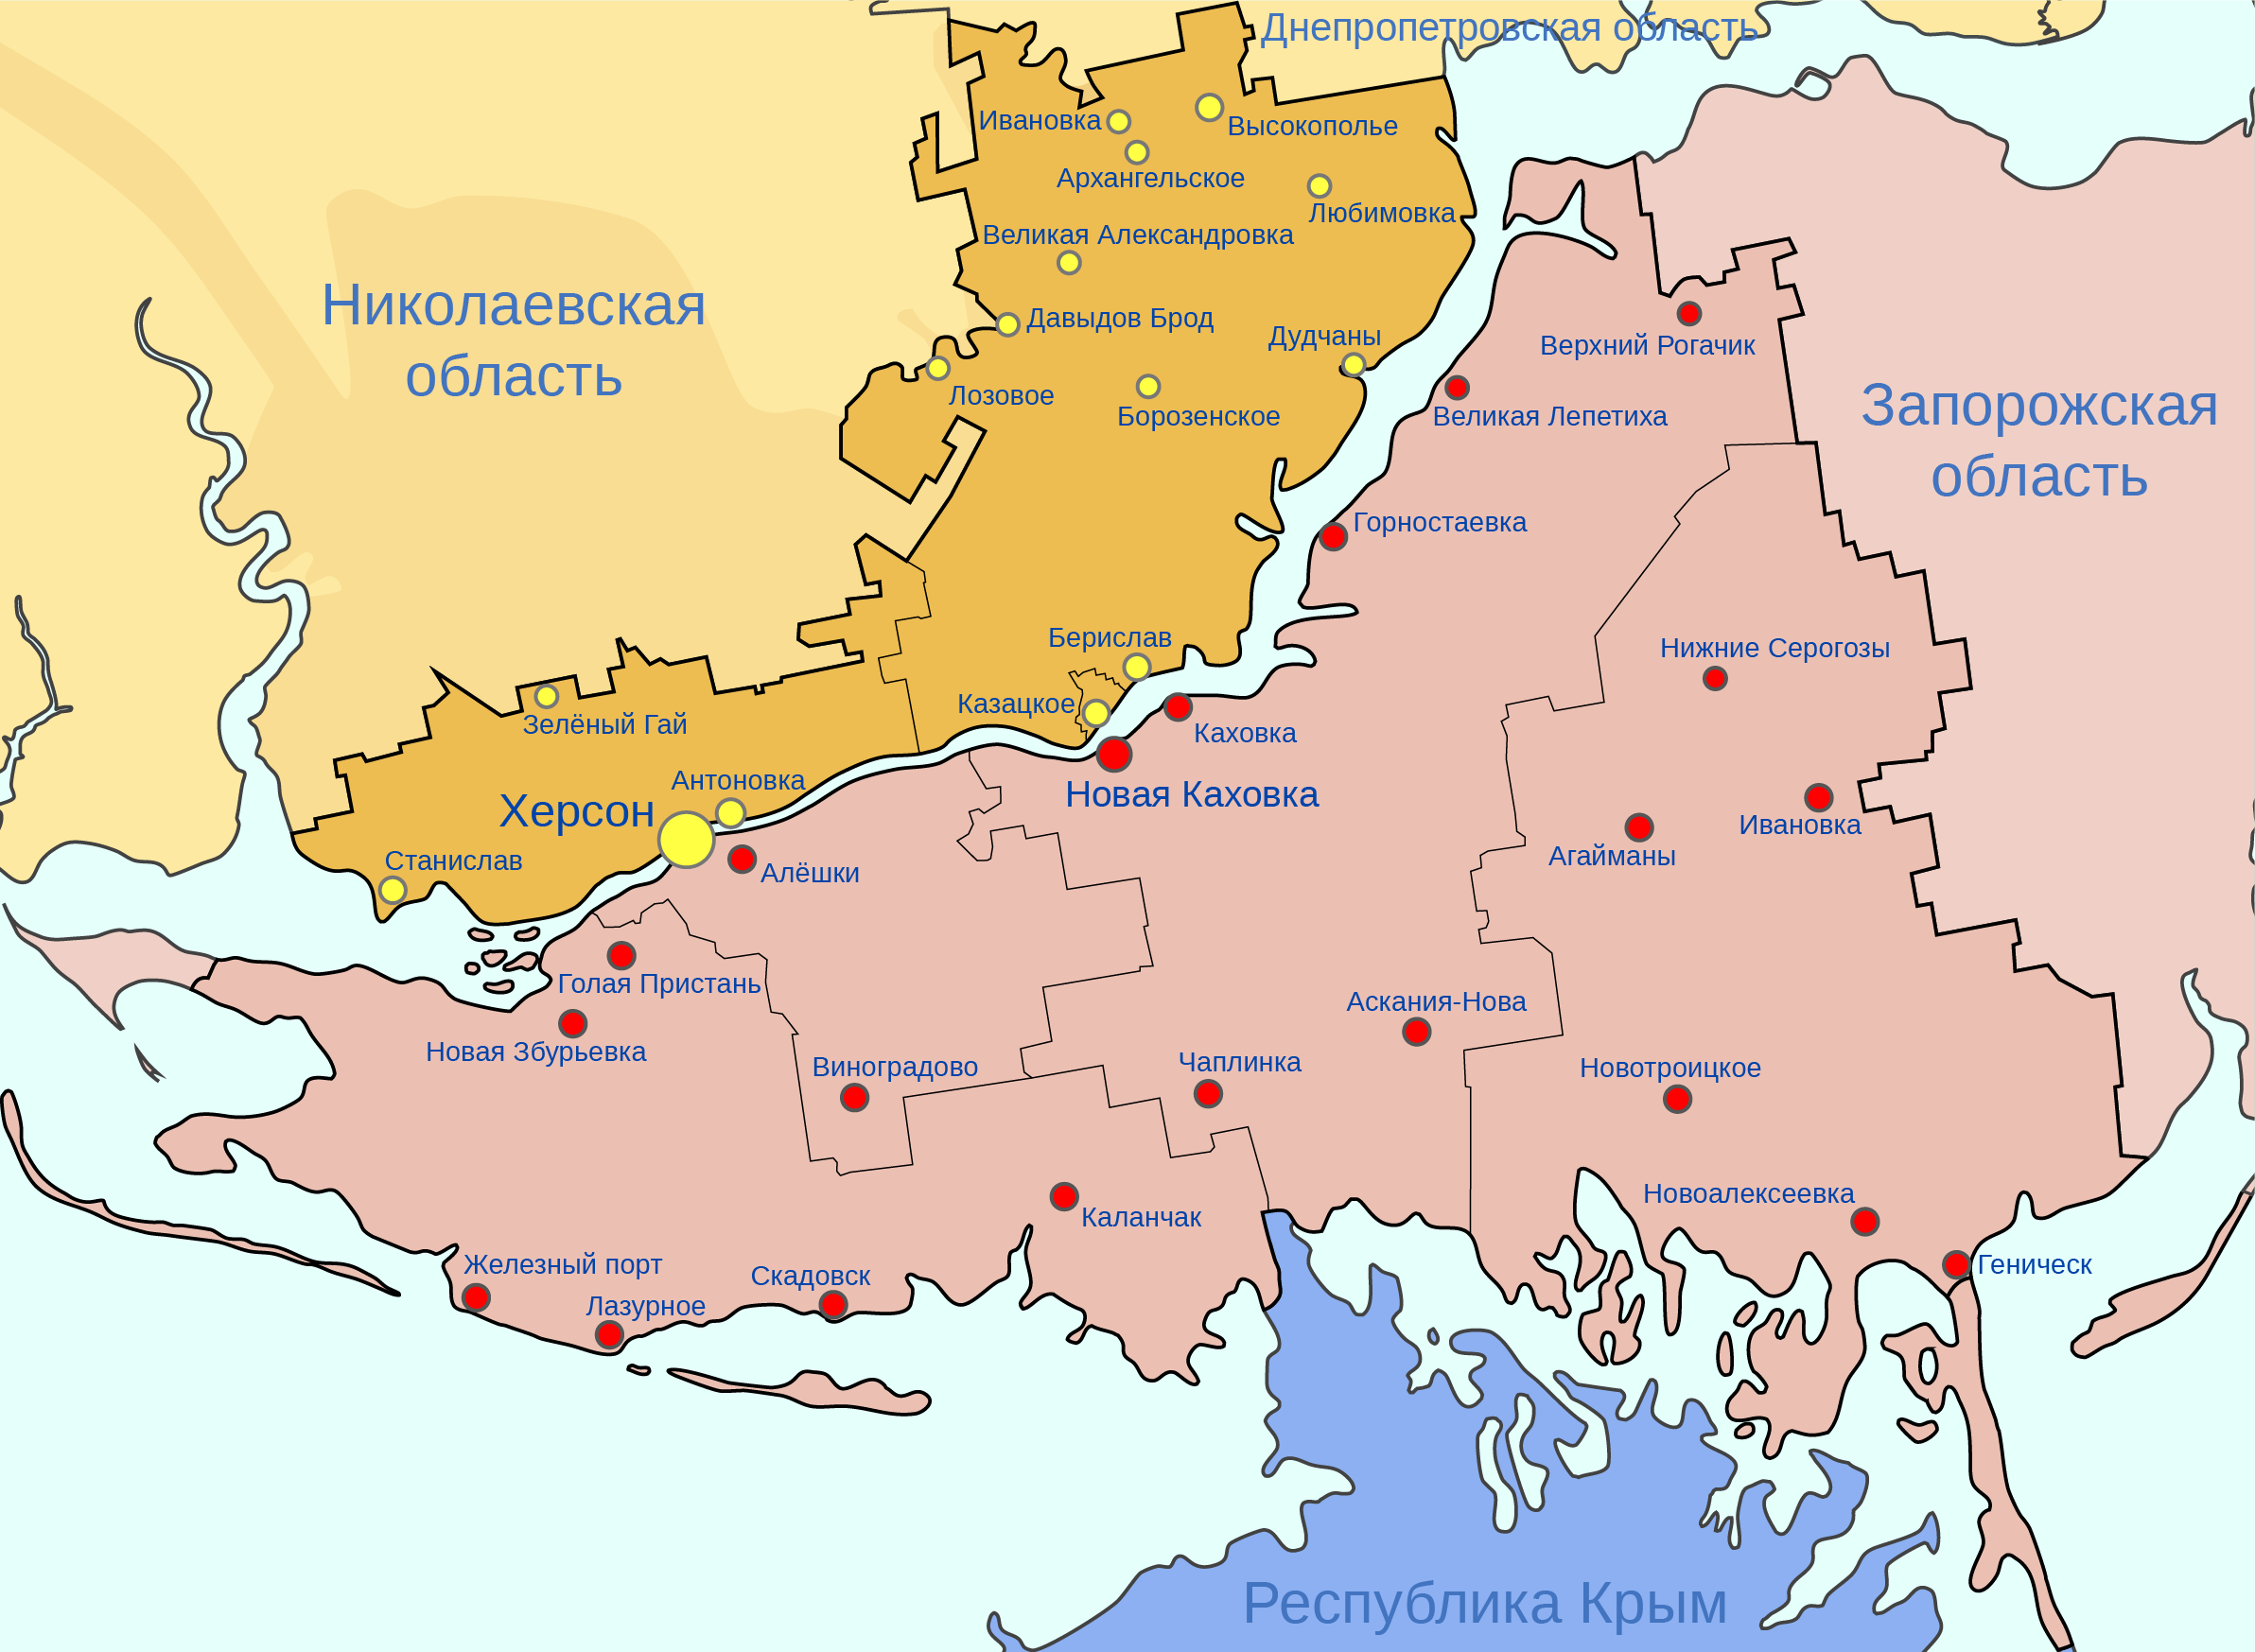 Карта Херсонской обл. Херсонская область на карте. Херсонская область на карте Украины. Административная карта Херсонской области. Границы херсонской области на карте